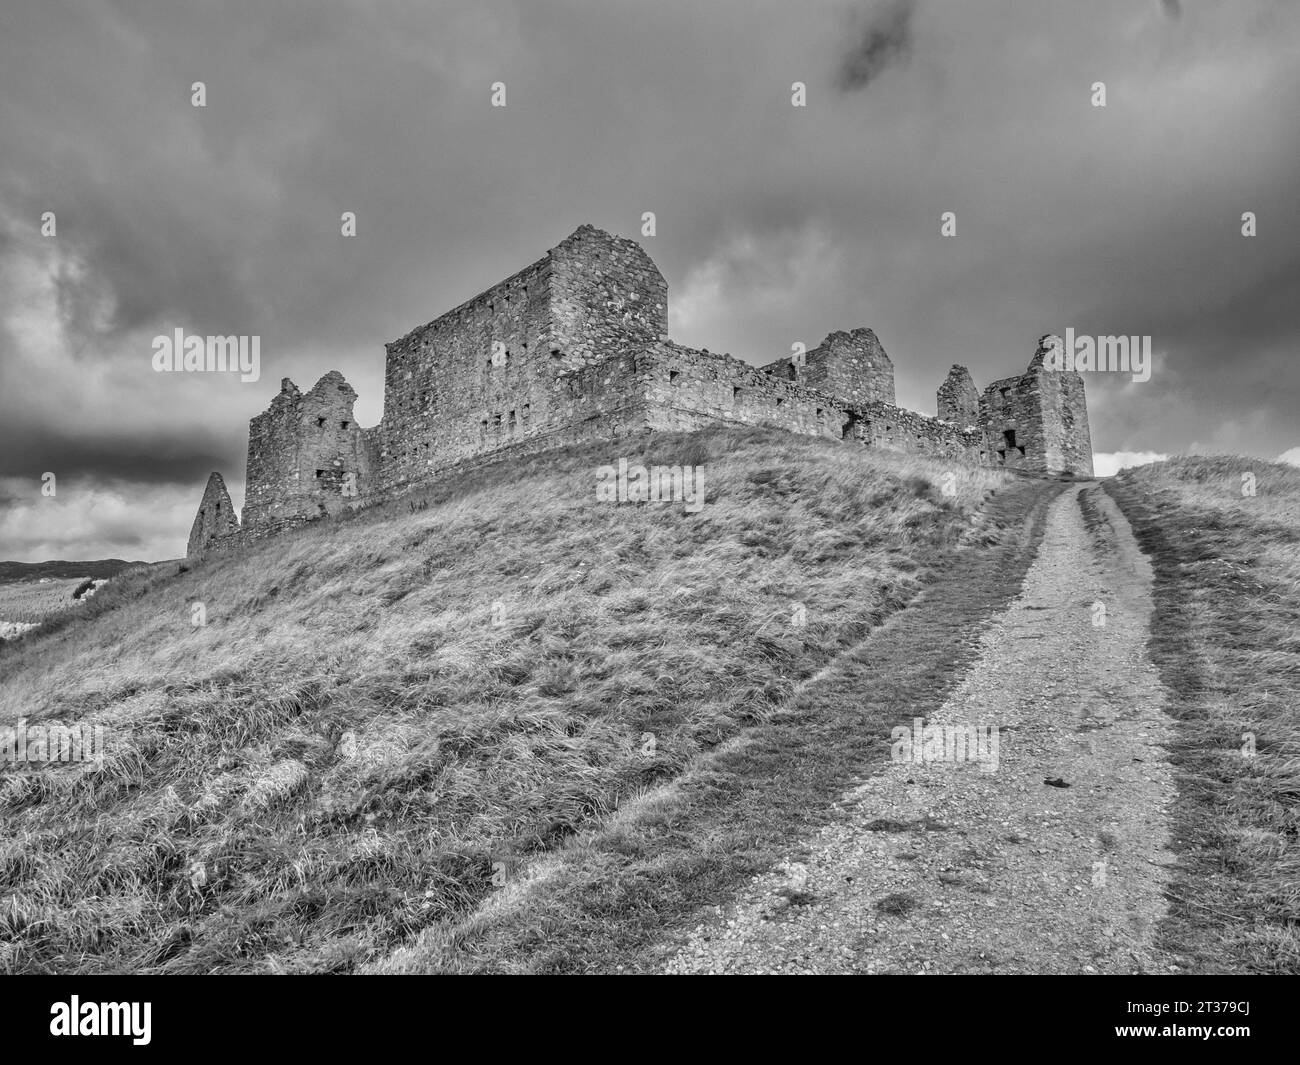 L'image est des ruines de la caserne militaire de Ruthven. Construit en 1721, pour surveiller les Highlands après l'échec du soulèvement jacobite de 1715 Banque D'Images